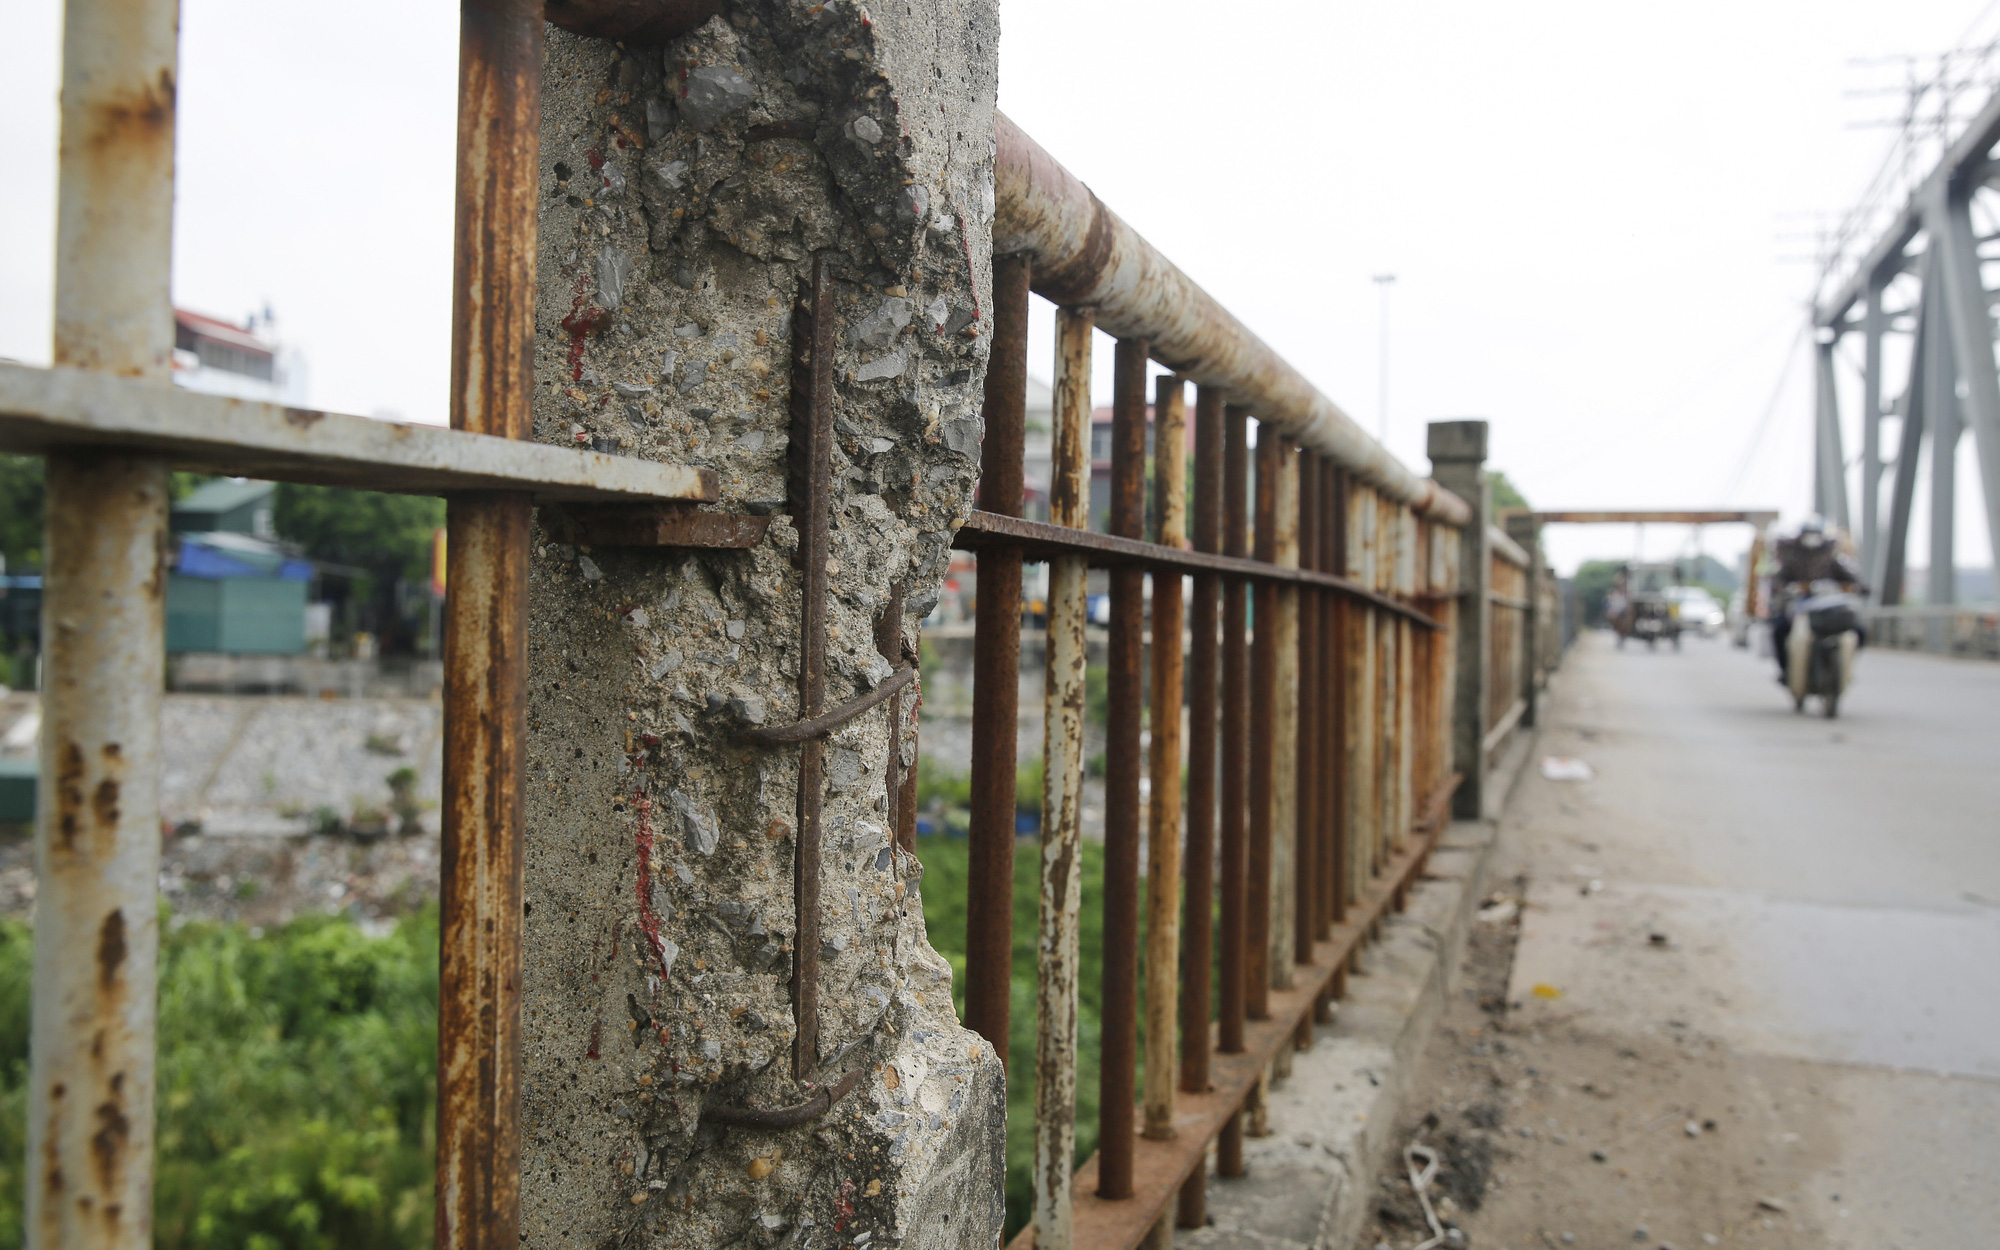 Hà Nội: Cận cảnh cây cầu xuống cấp được đề xuất xây mới trị giá gần 1.800 tỷ đồng